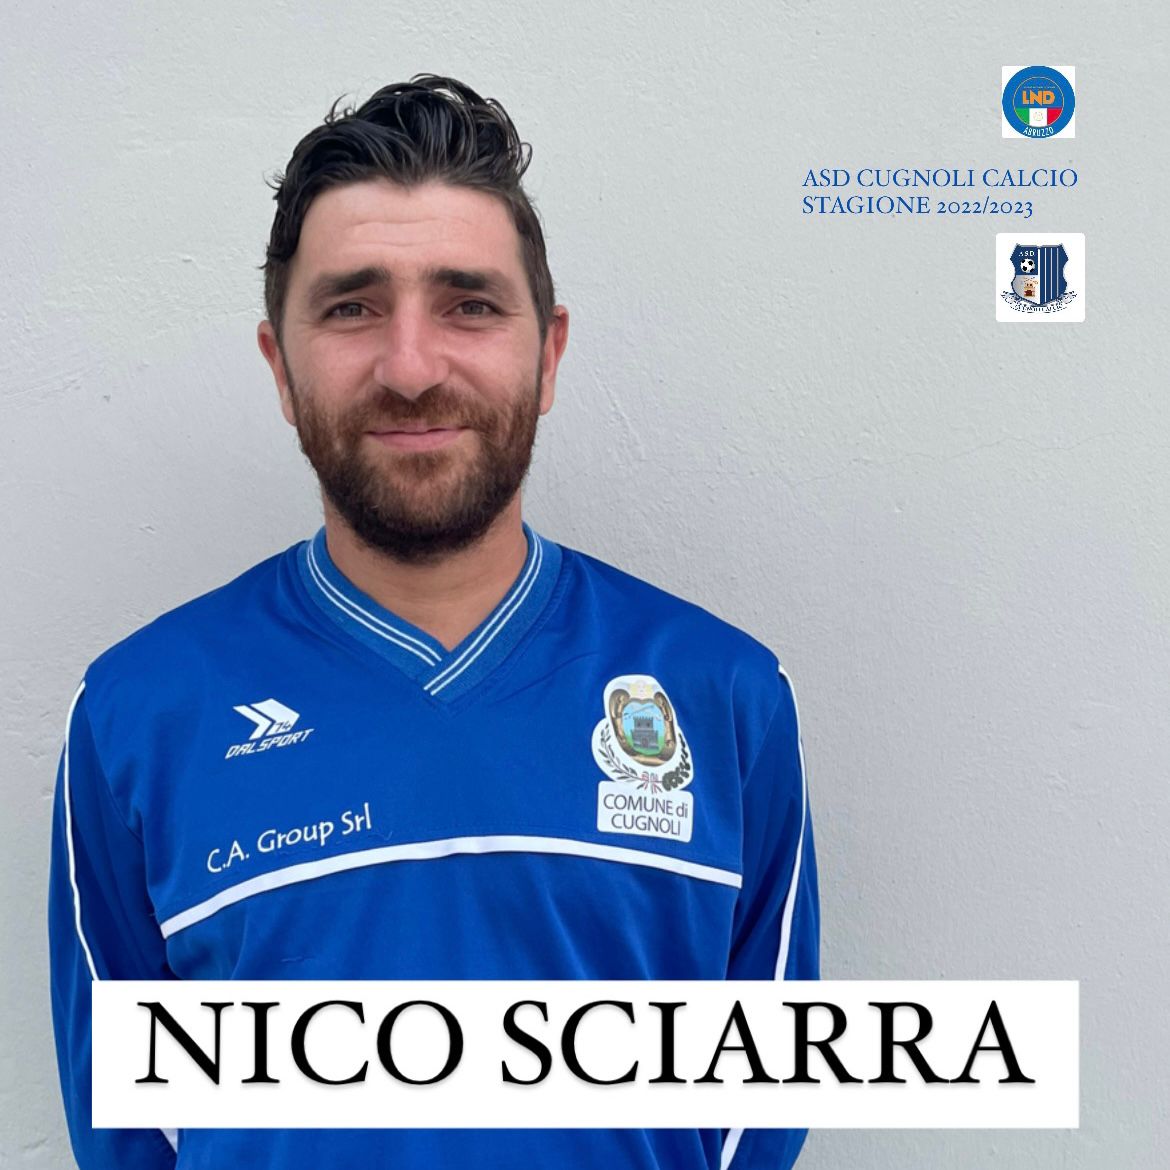 Nico Sciarra